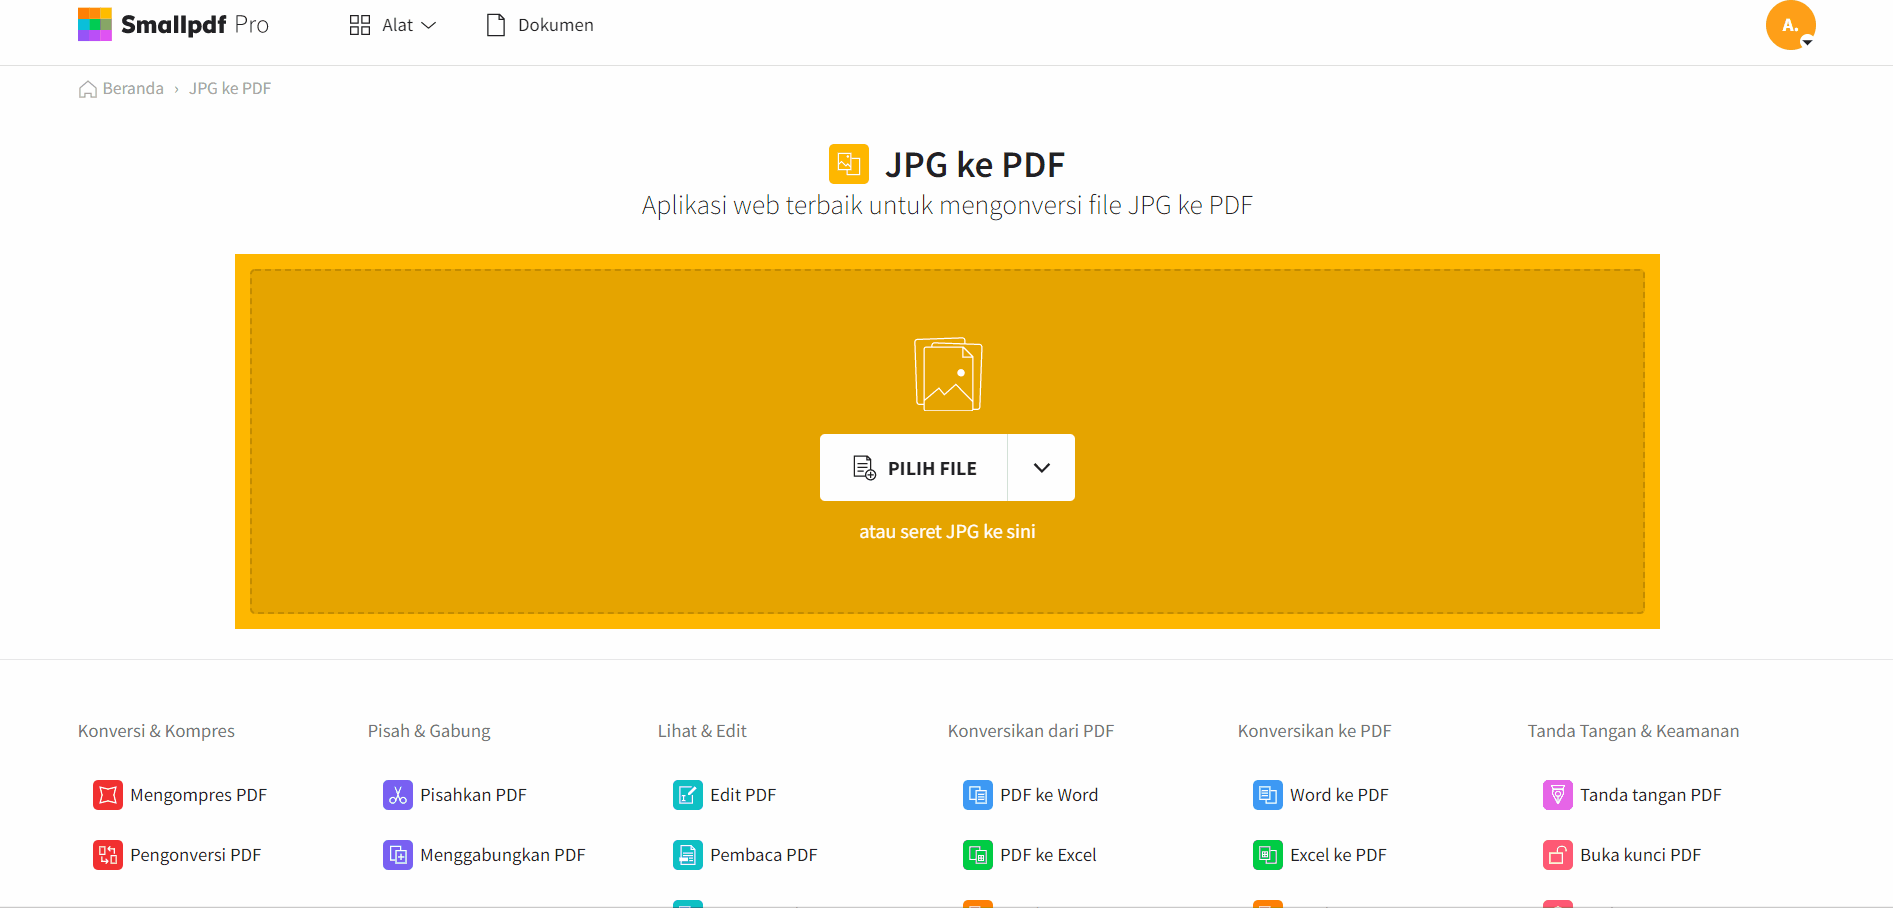 2019-10-19 – Ubah PNG ke JPG Online Gratis – Alat Smallpdf